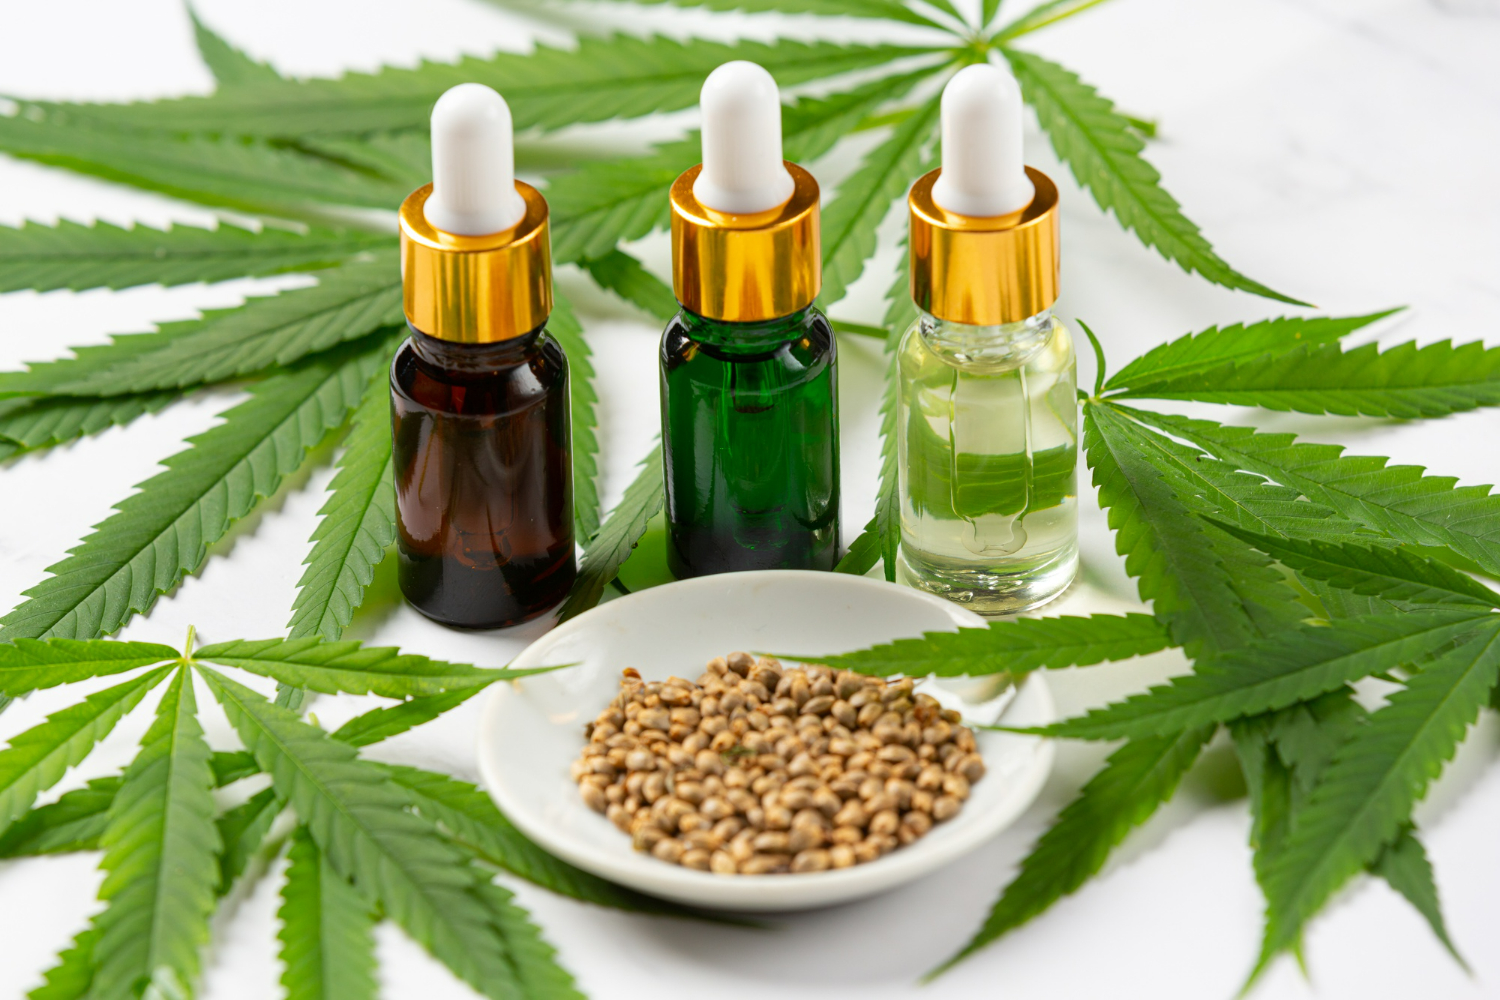 La legalización del cannabis para uso medicinal e industrial logra